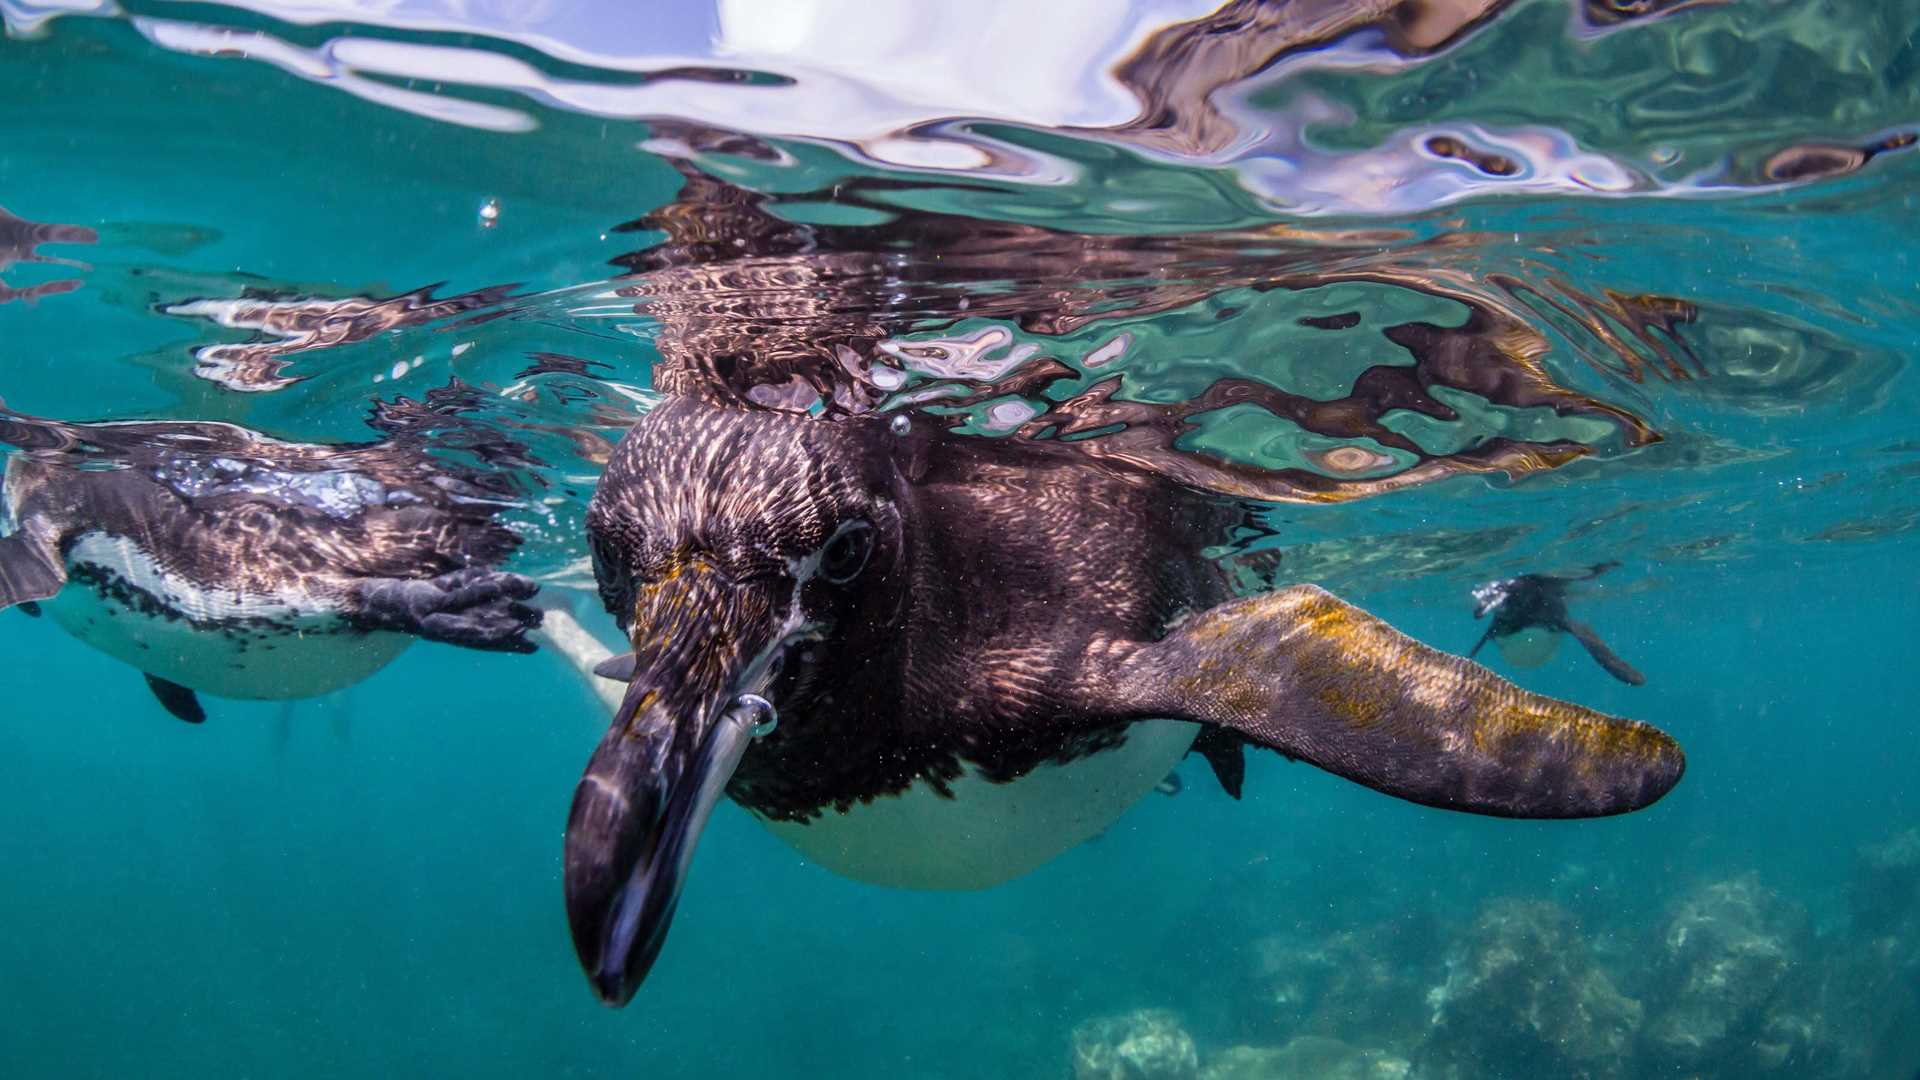 A Galápagos penguin swims towards the camera